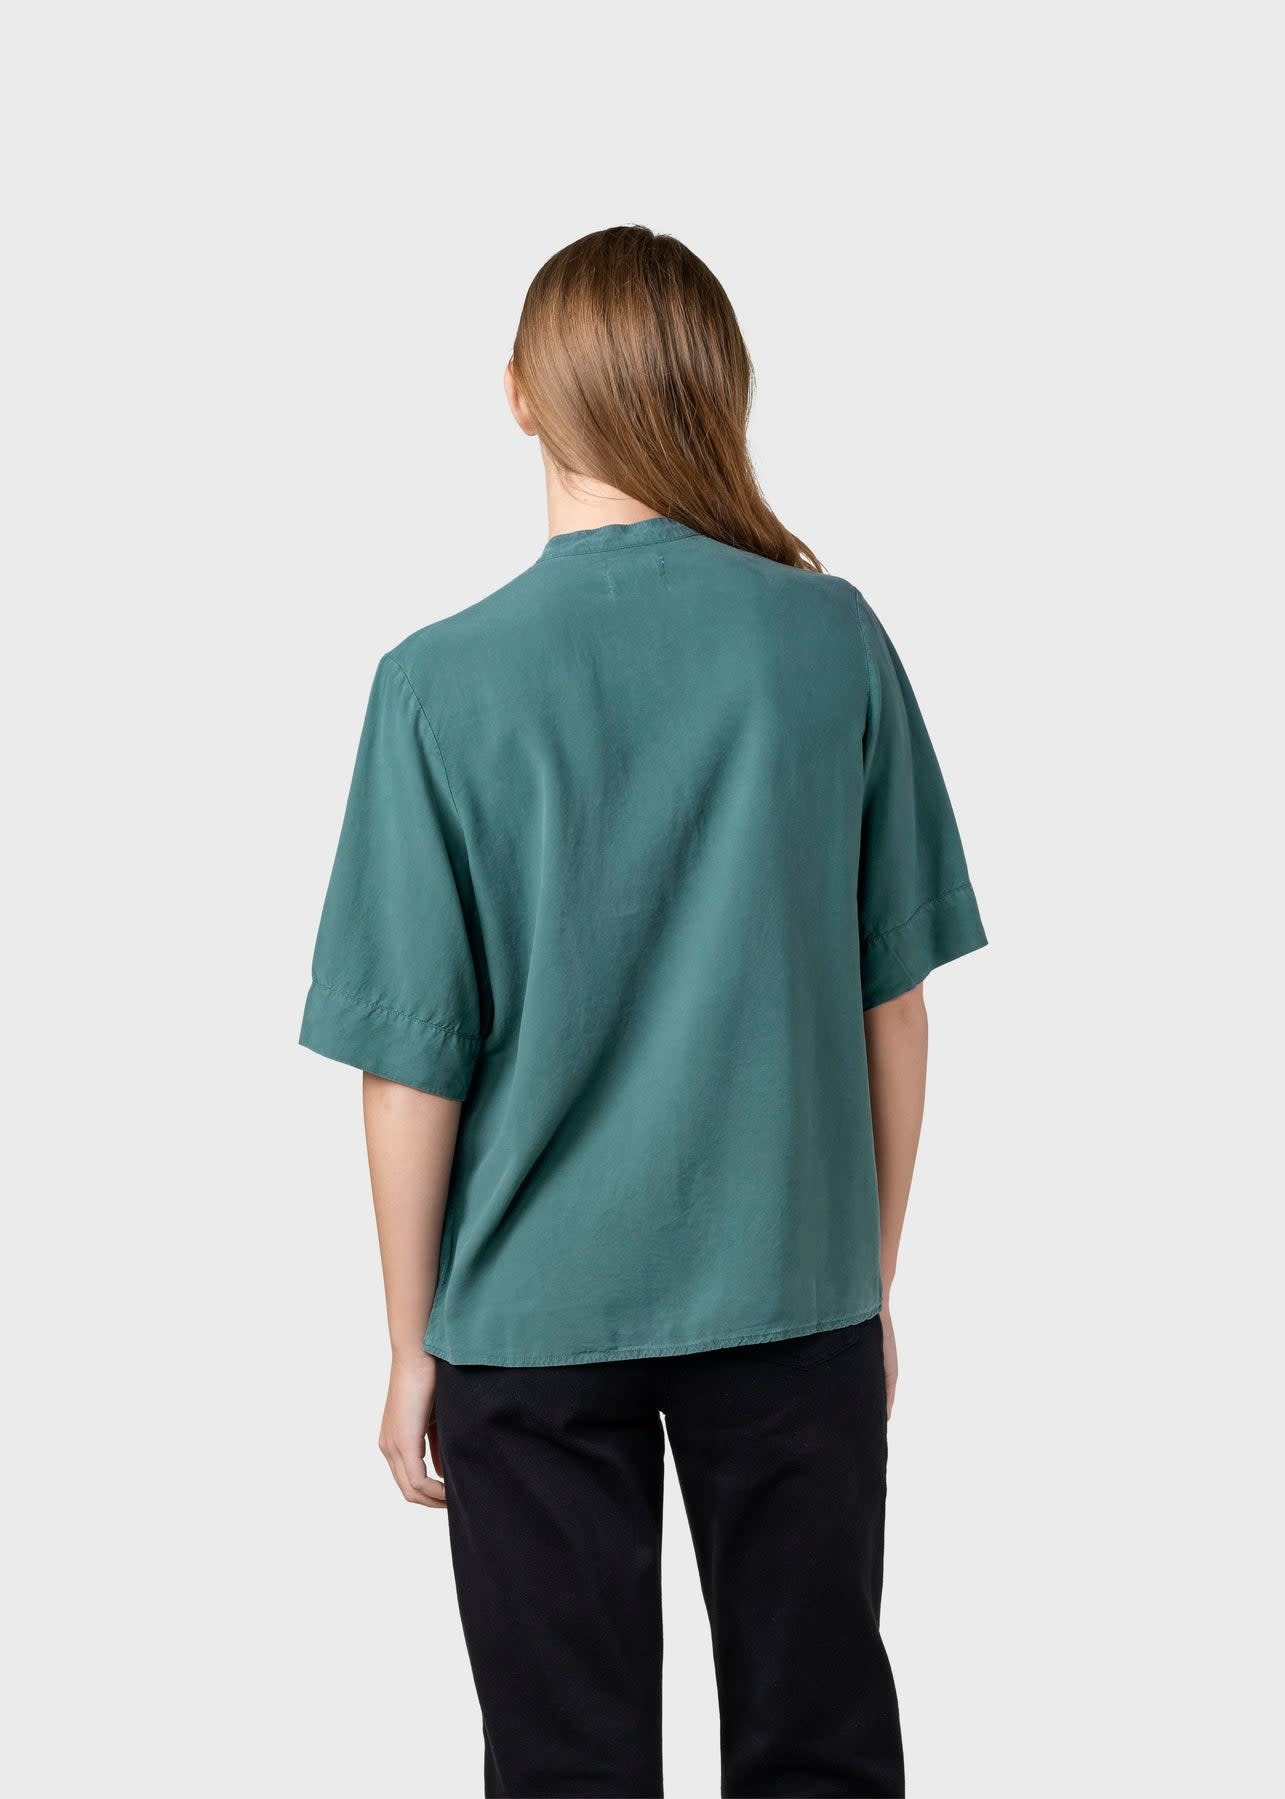 Klitmøller Klitmøller, Solrun Shirt, moss green, XS